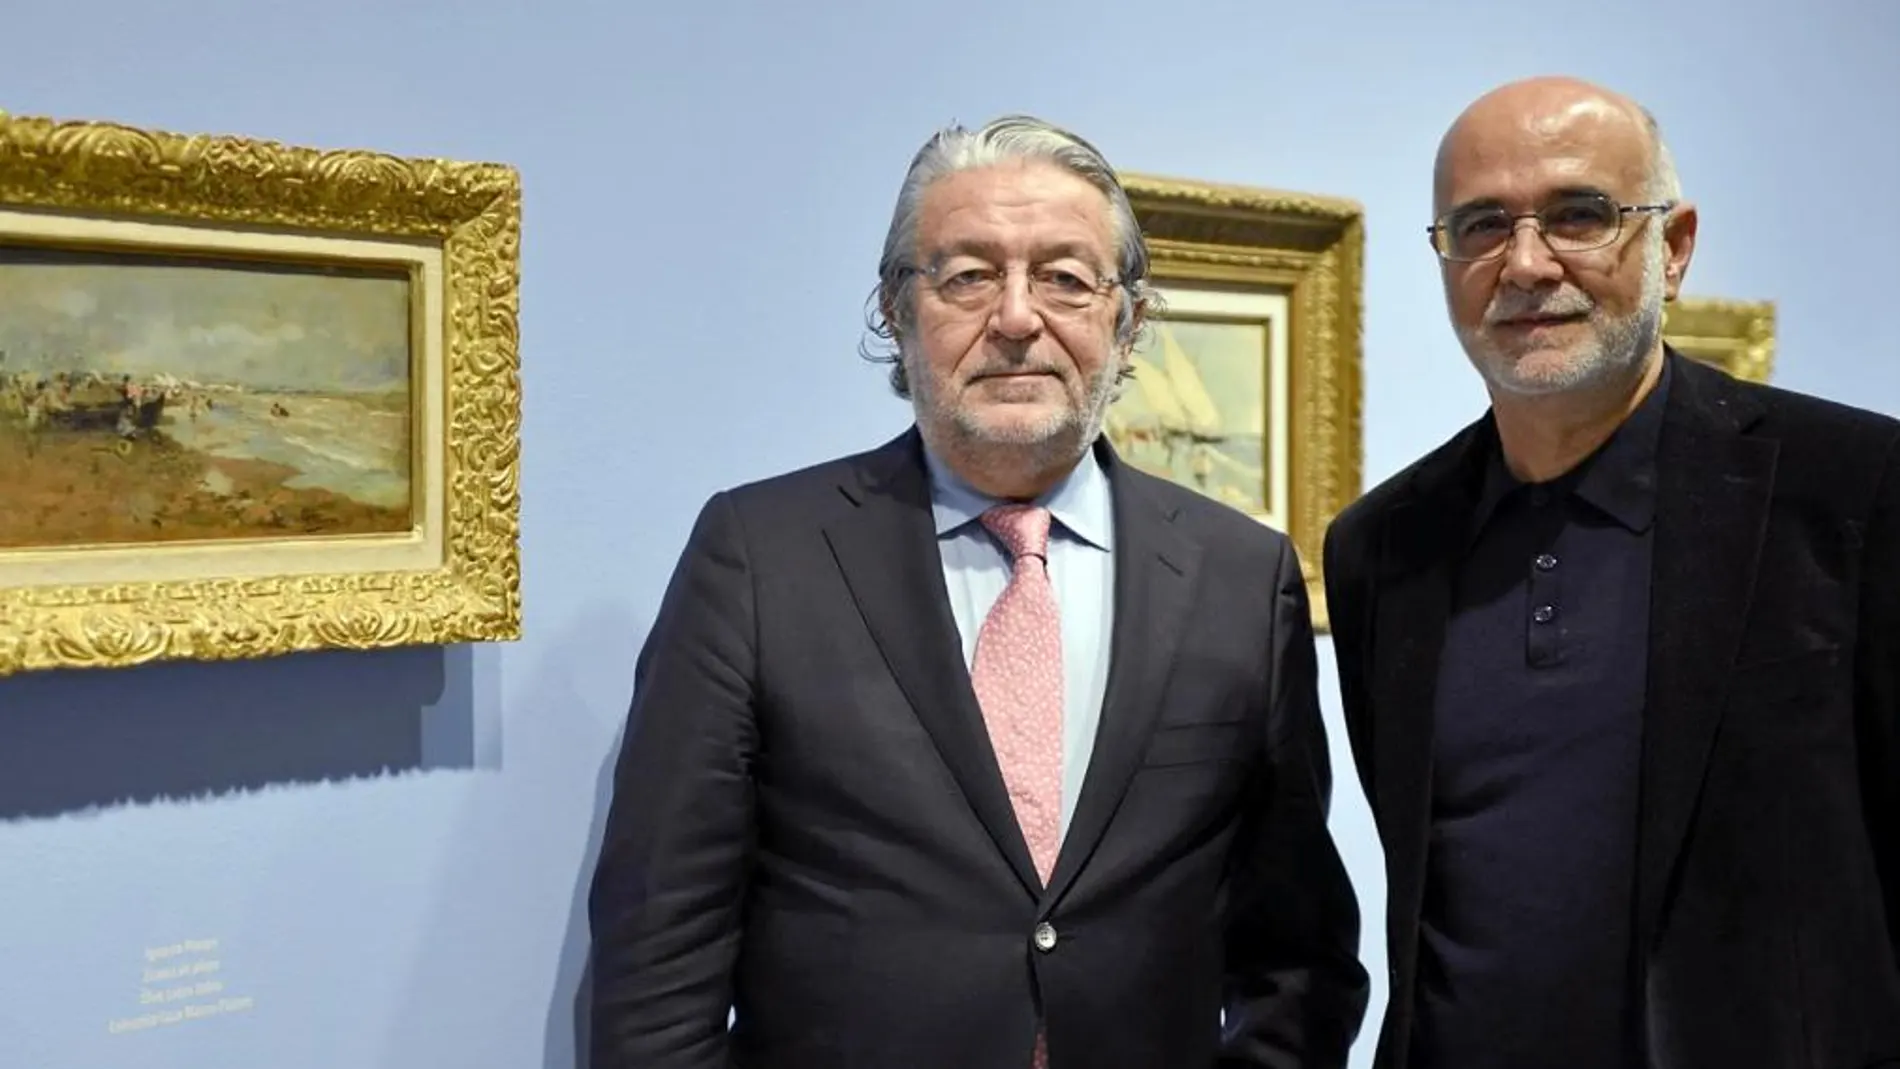 El presidente de Fundación Bancaja, Rafael Alcón, y el comisario de la exposición, Francisco Javier Pérez Rojas